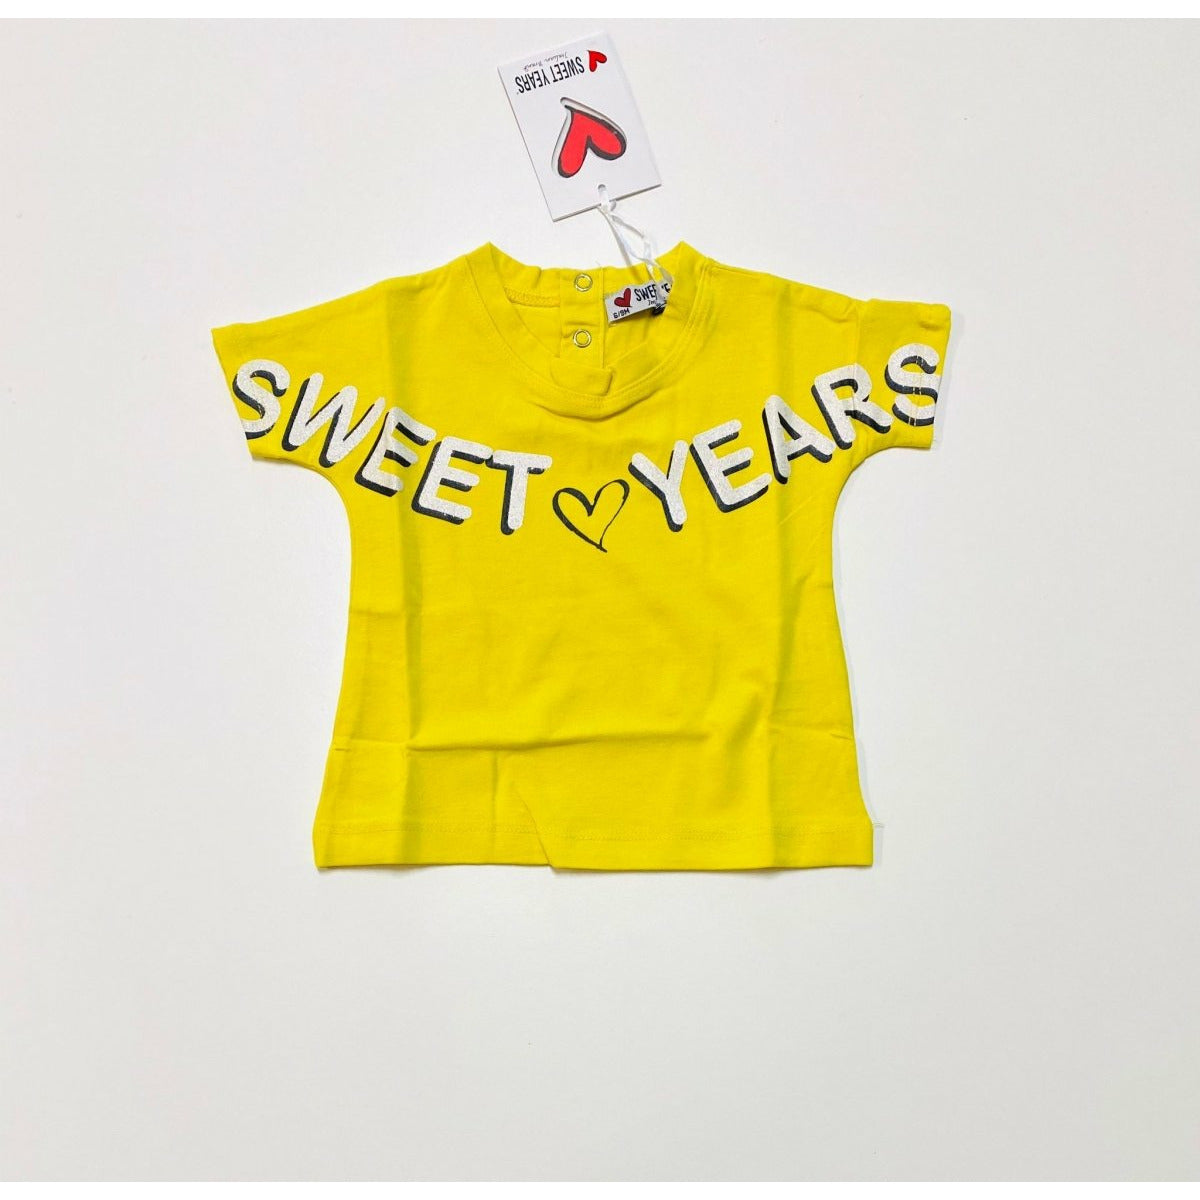 T-shirt Neonata SWEET YEARS - Mstore016